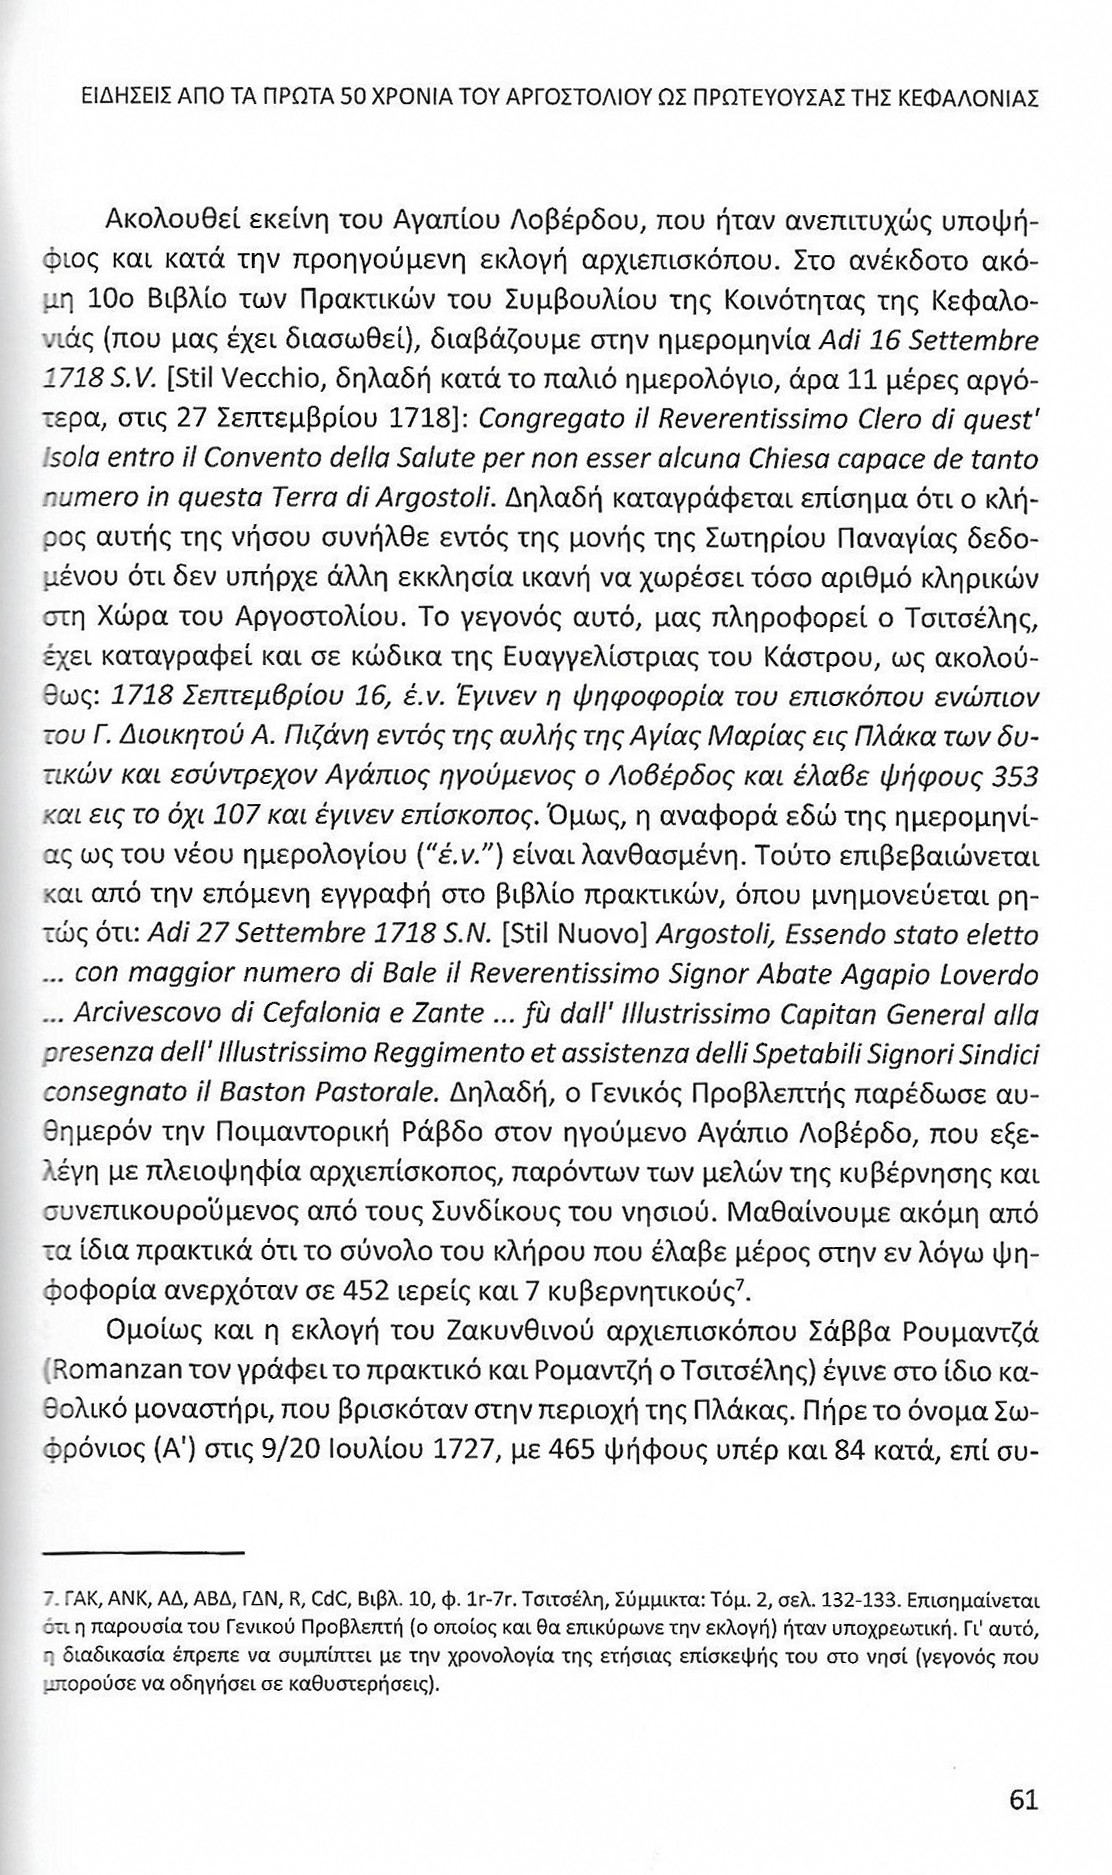 Πρώτα 50 χρόνια Αργοστολίου ως πρωτεύουσας Κεφαλονιάς, Ιονικά Ανάλεκτα, τ. 7, σελ. 61